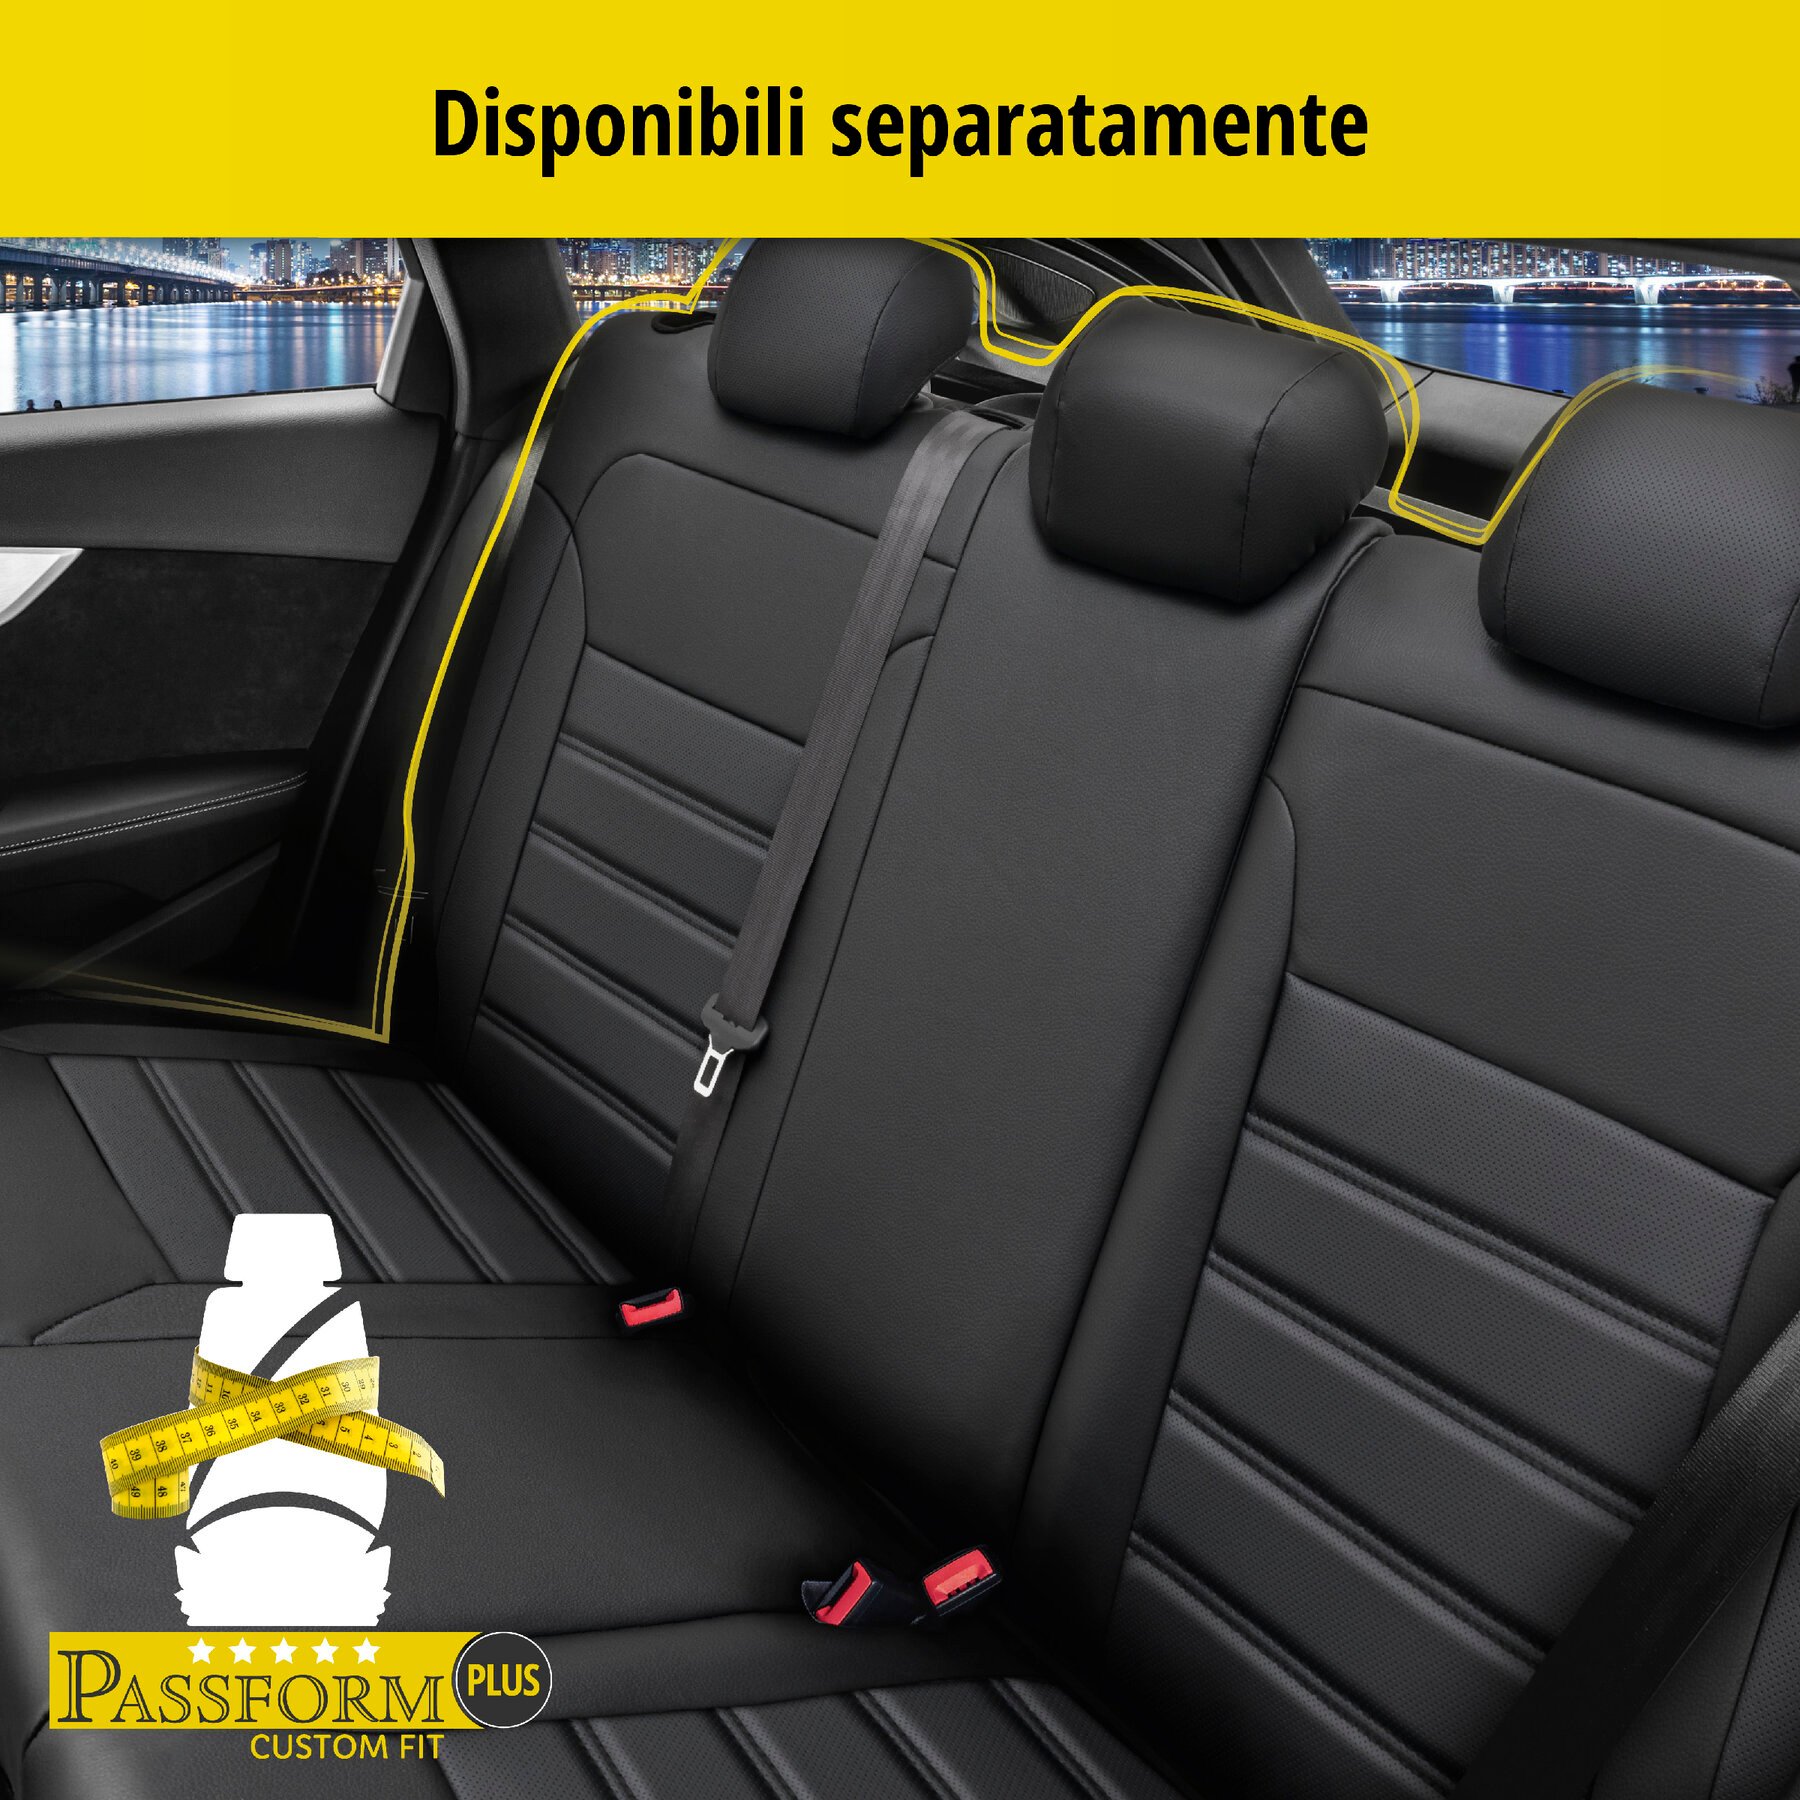 Coprisedili Robusto per Opel Astra 06/2015-Oggi, 2 coprisedili singoli per sedili normali